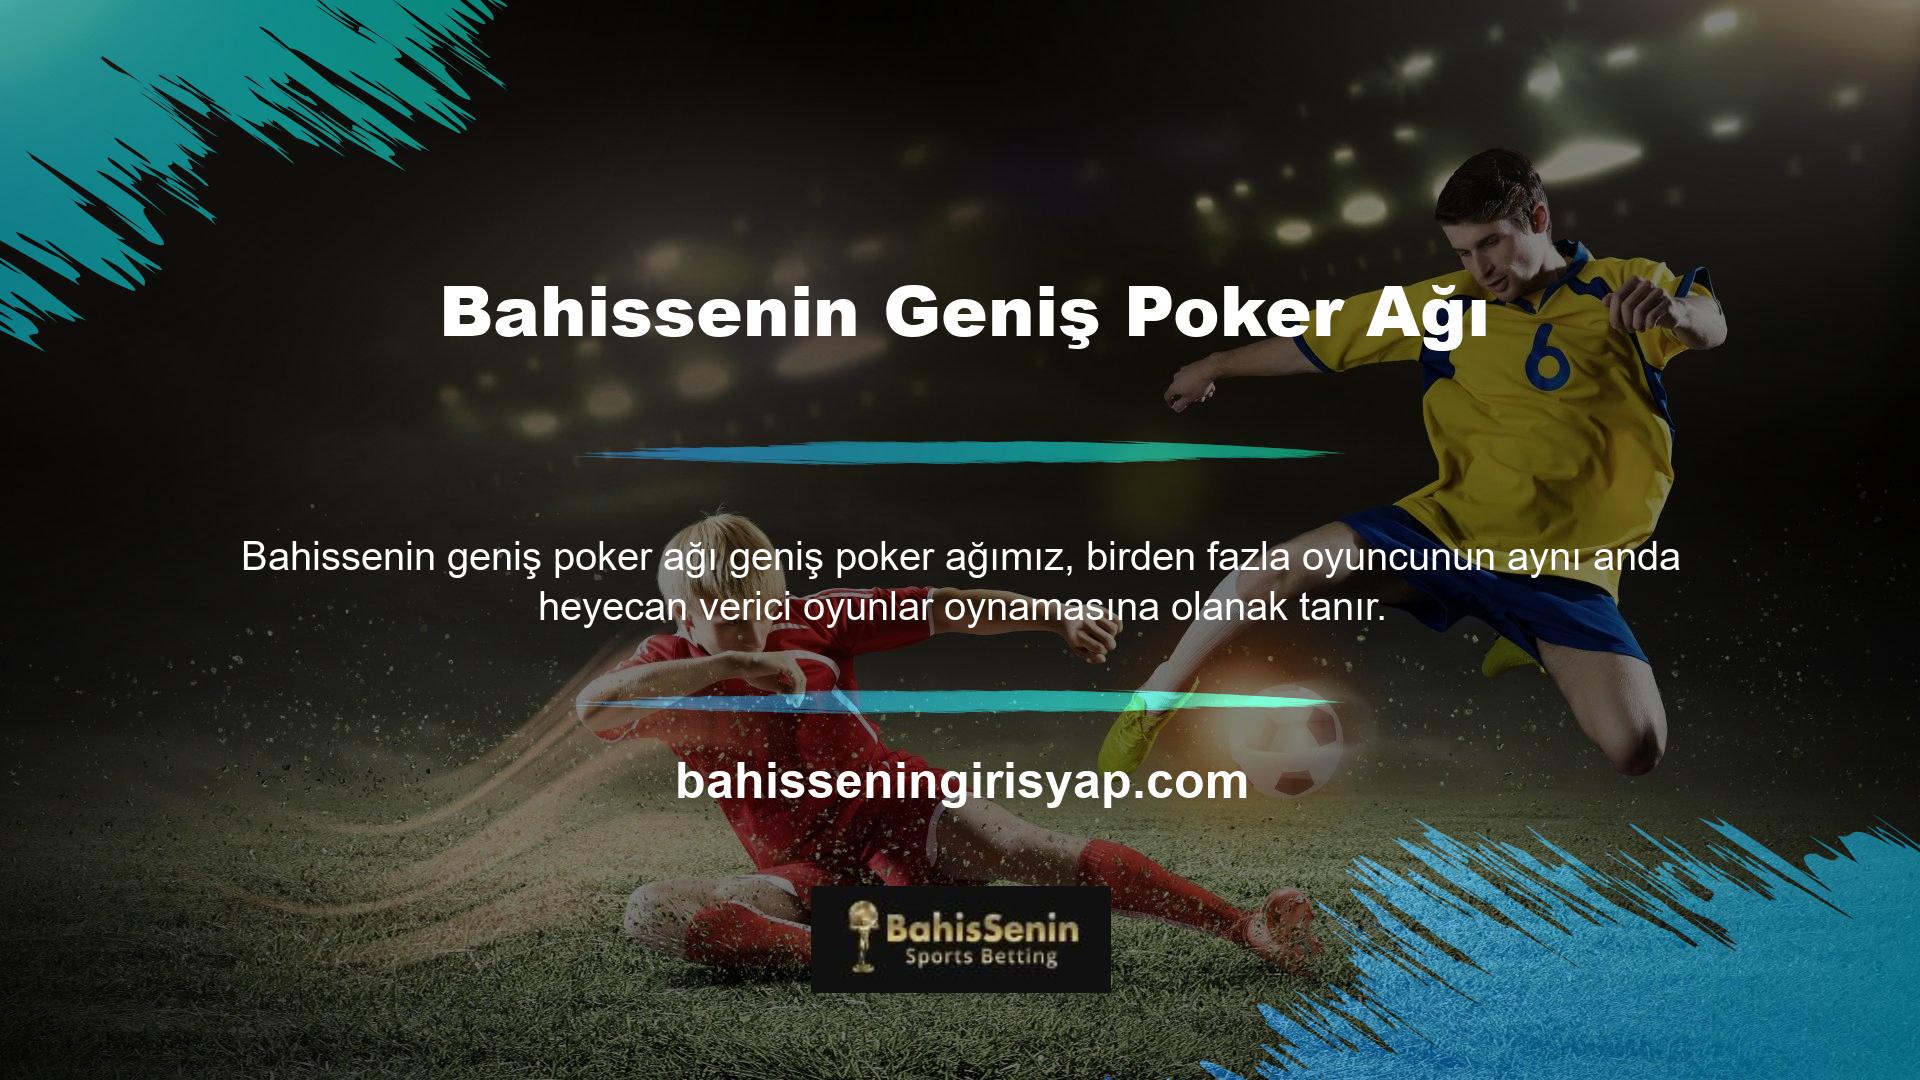 Sitenin canlı casinosu, Texas Hold'em, Turkish Hold'em ve Open Poker gibi en popüler oyunları çeşitli masalarda sunmaktadır